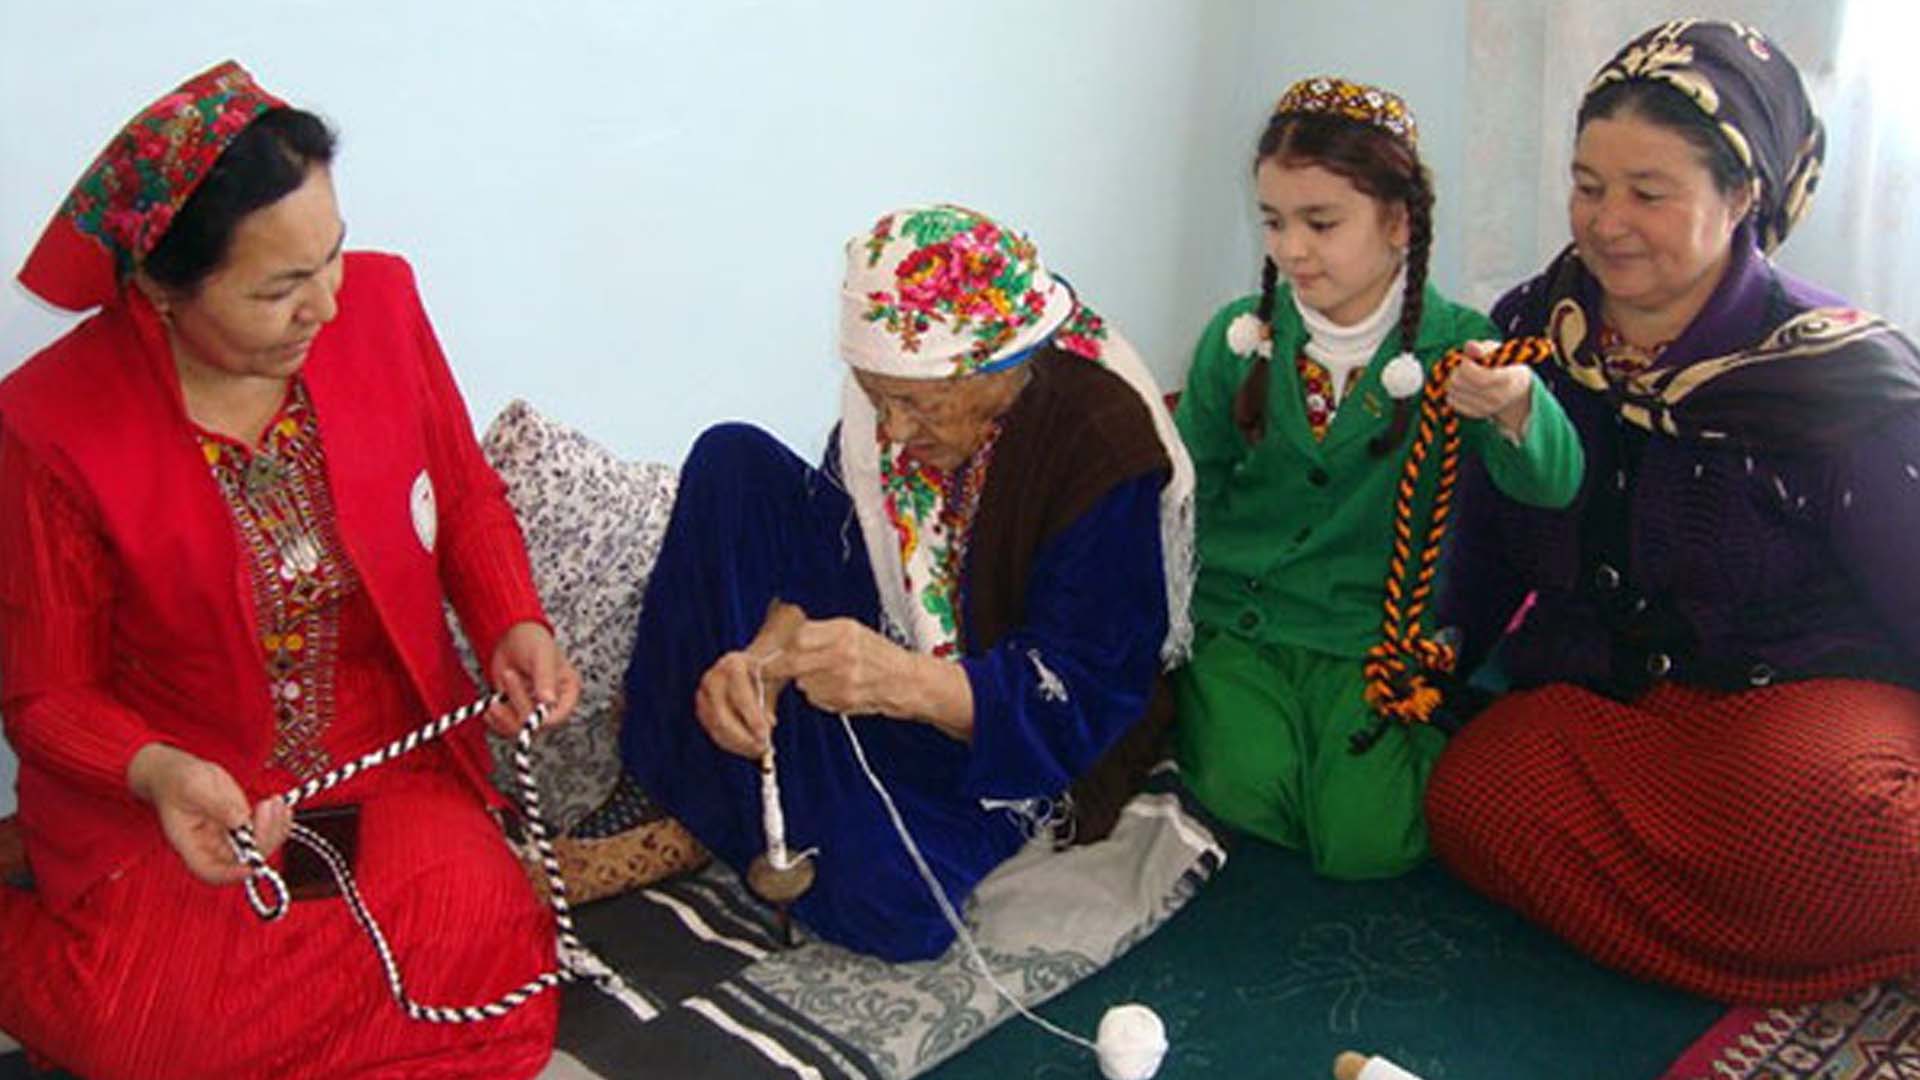 A Turkmen official denied discrimination against women